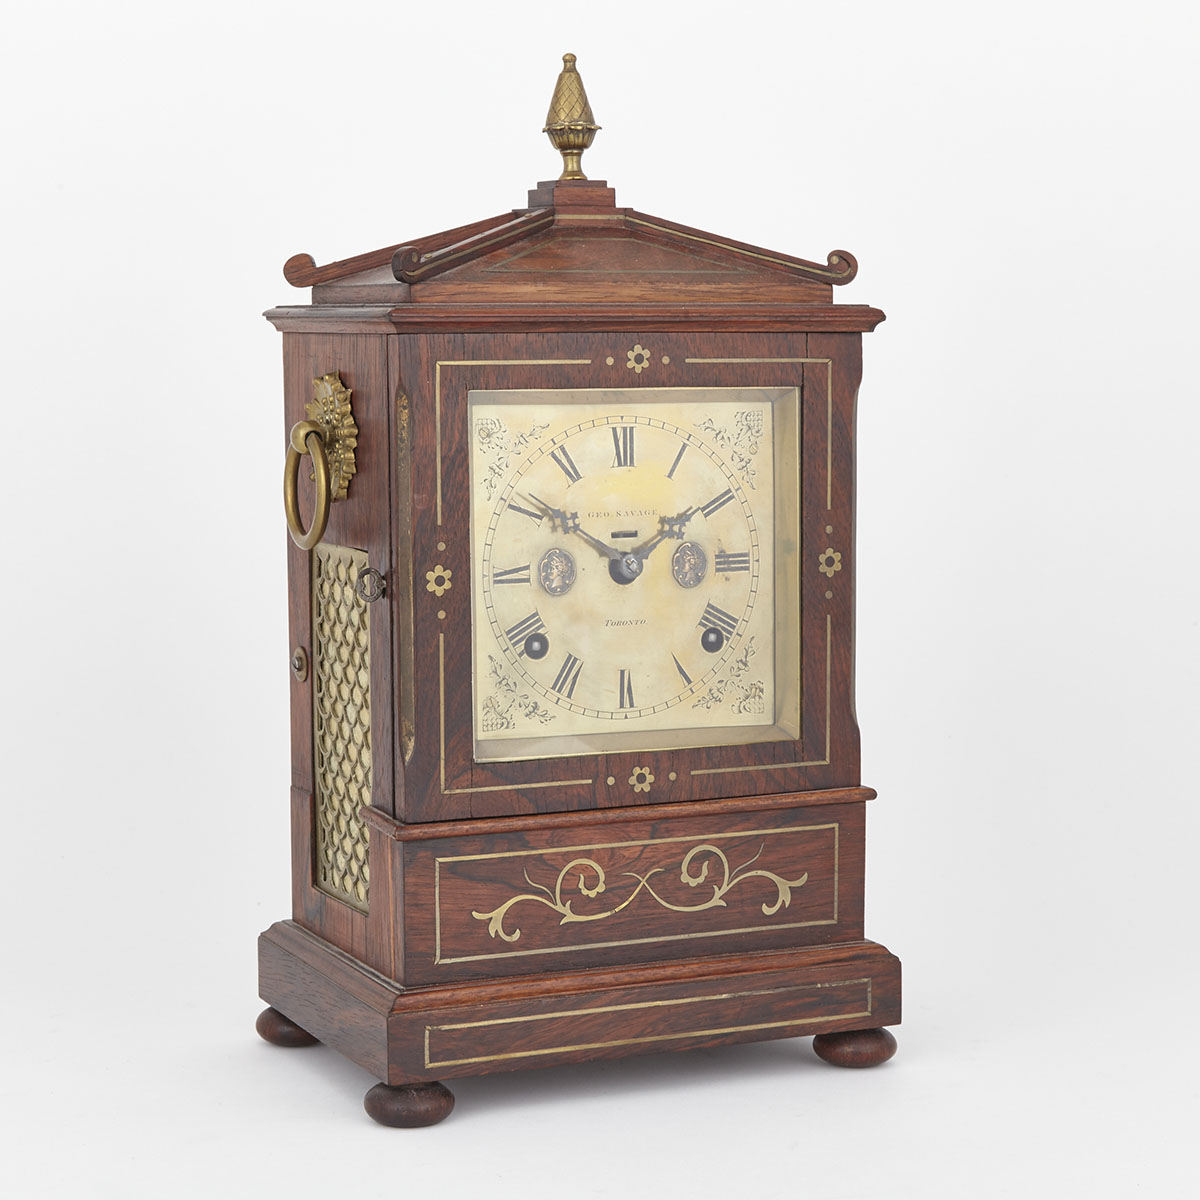 Canadian Regency Rosewood Bracket Clock, George Savage, Toronto, c.1830